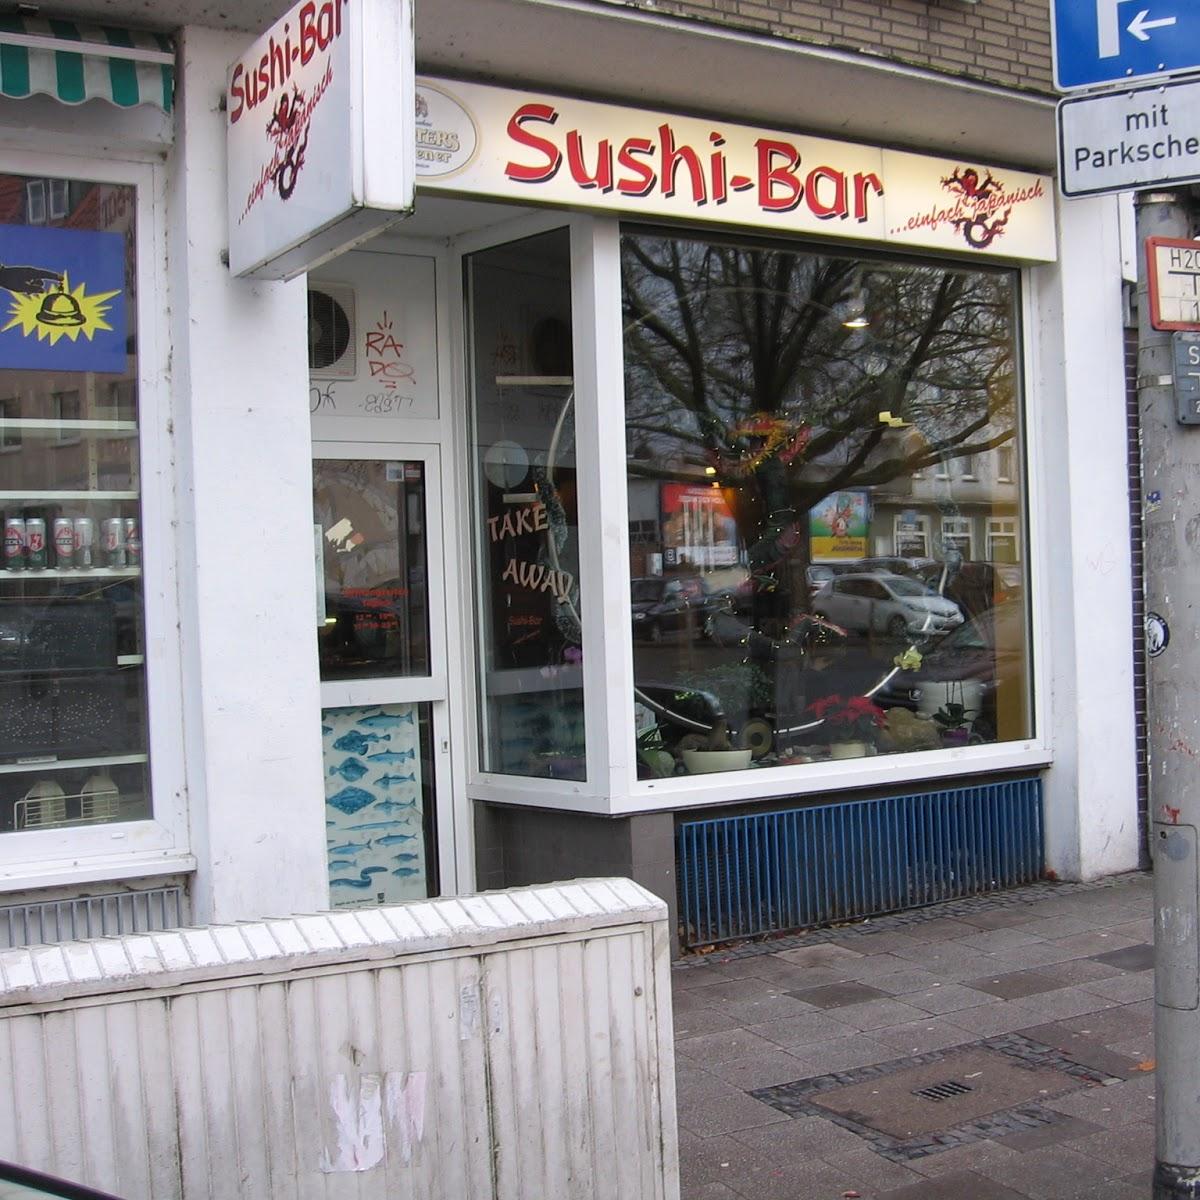 Restaurant "Sushi-Bar" in Braunschweig